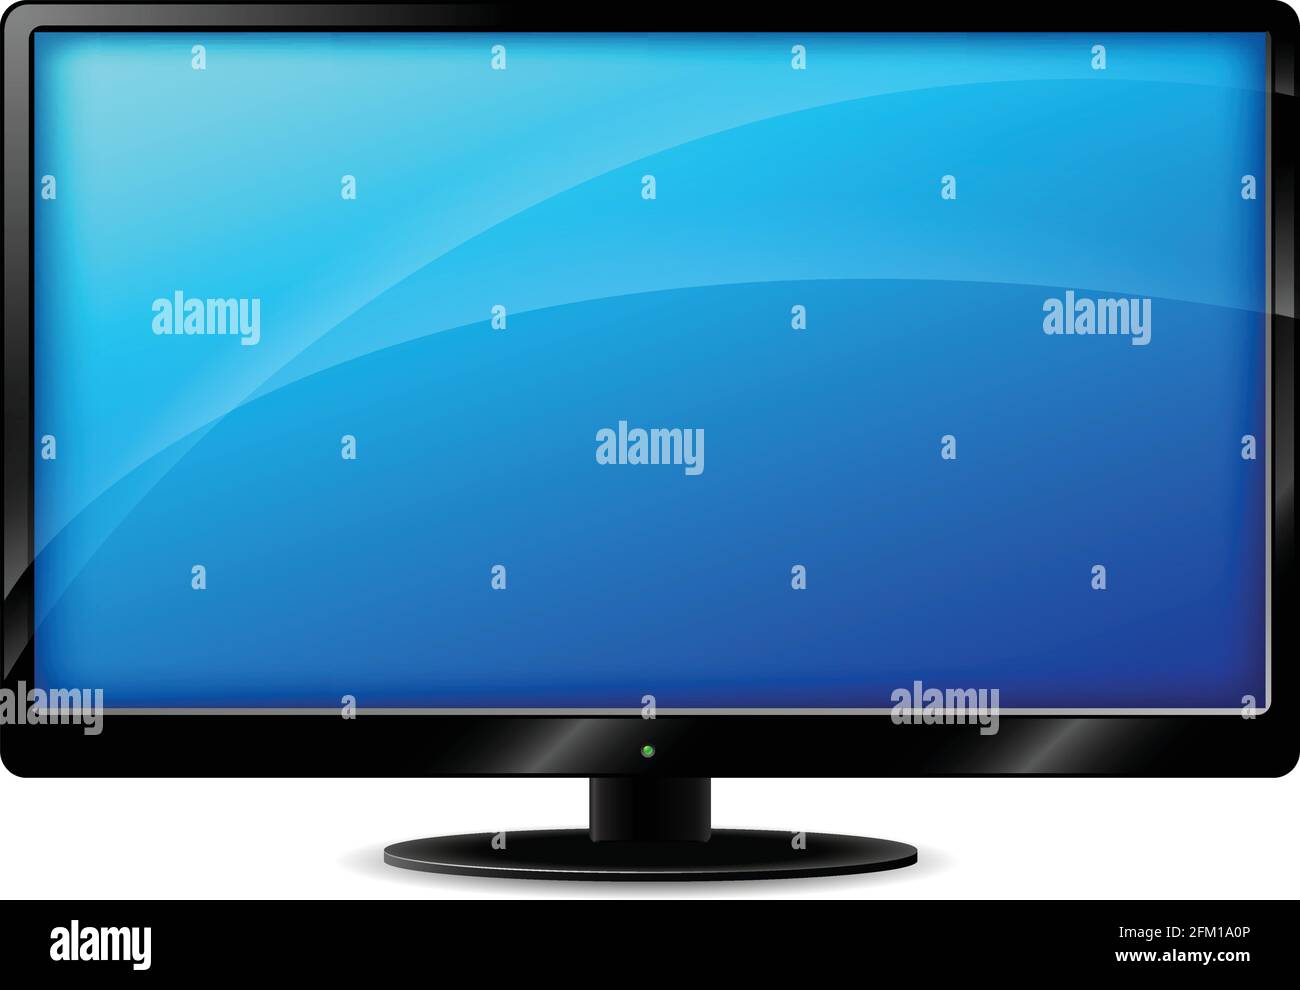 Illustration of tv set on white background Stock Vector